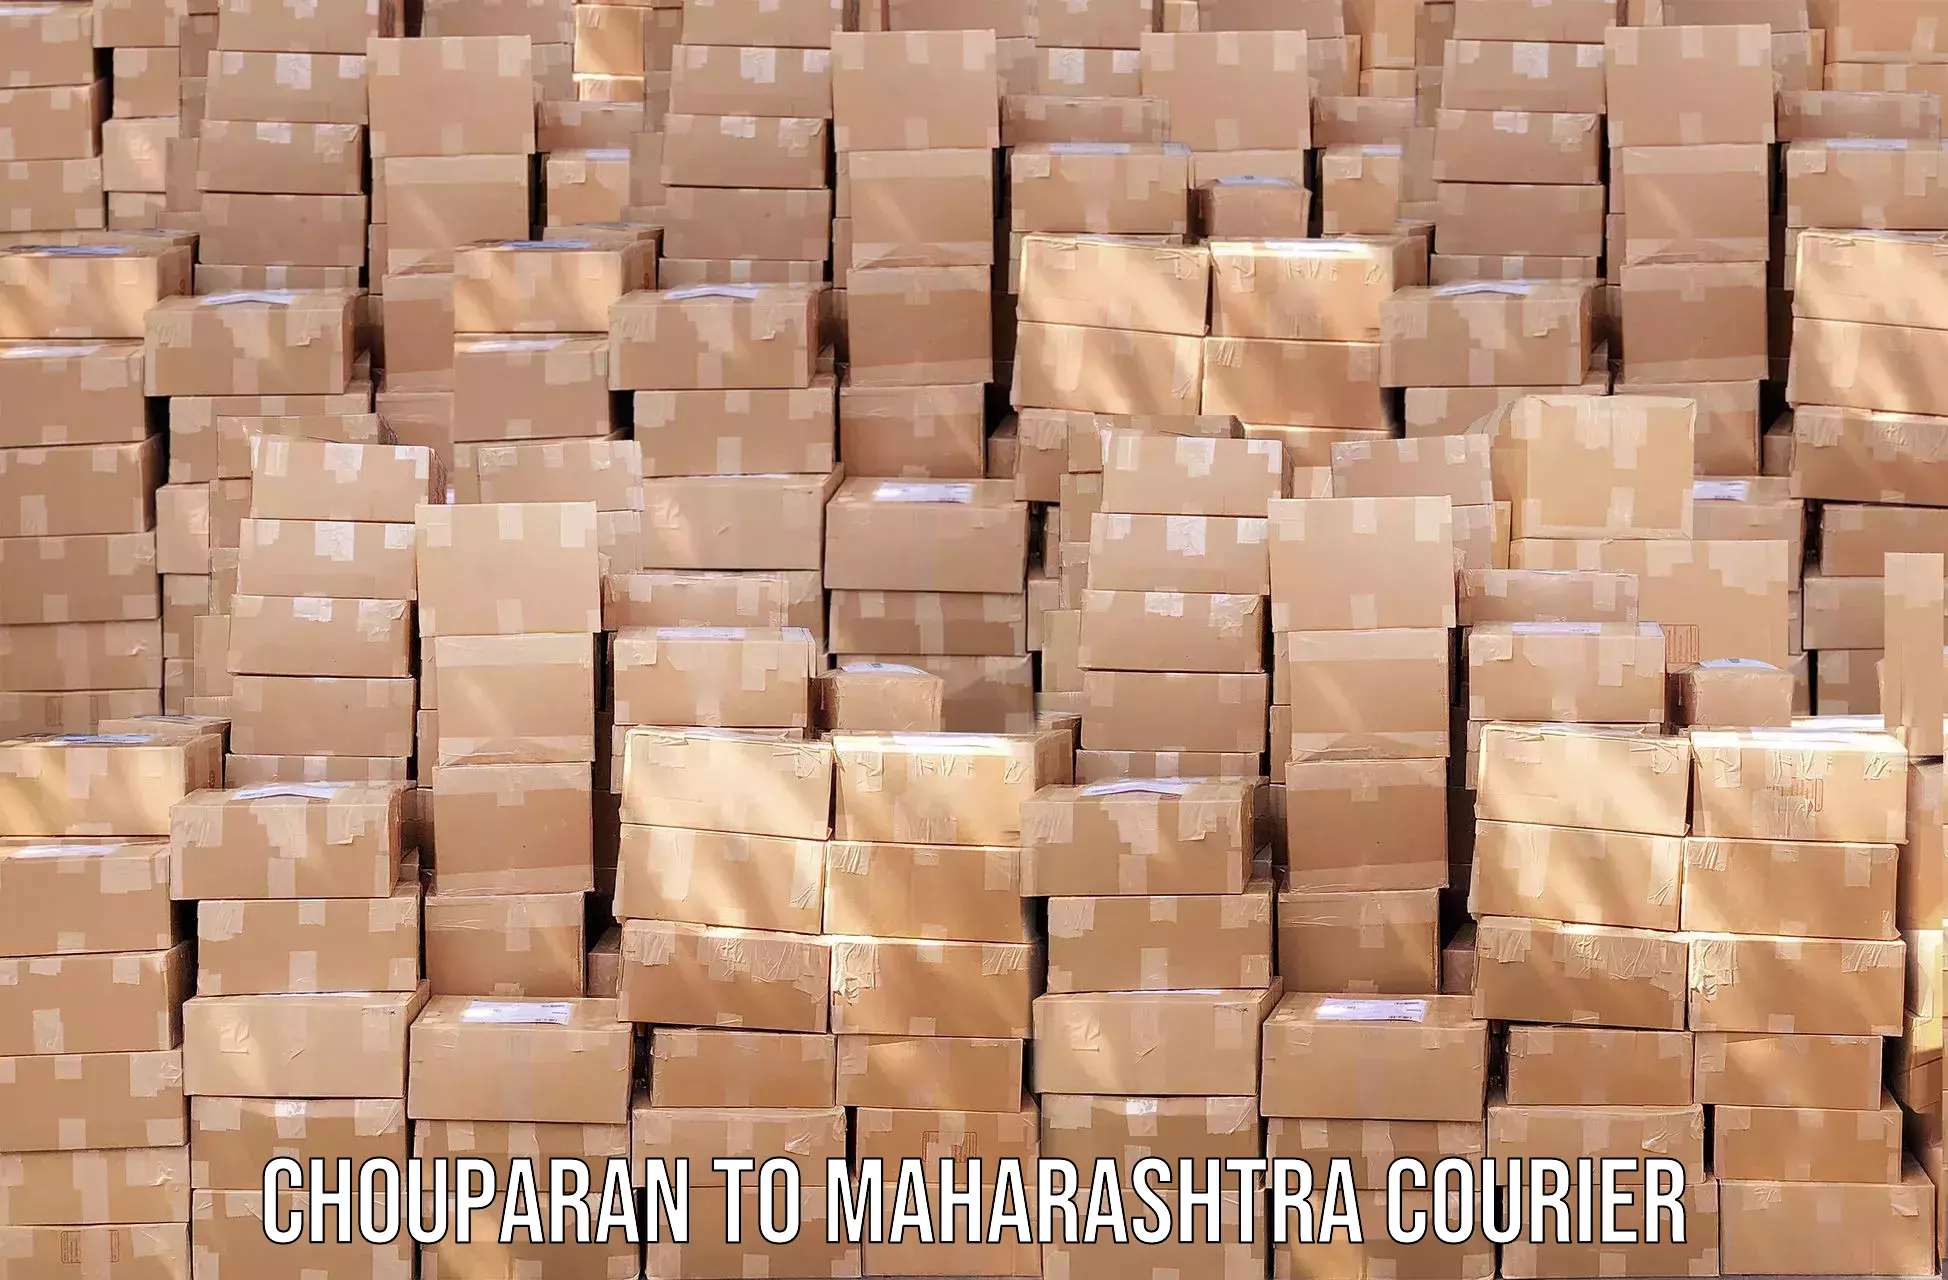 Efficient parcel service Chouparan to Karanja